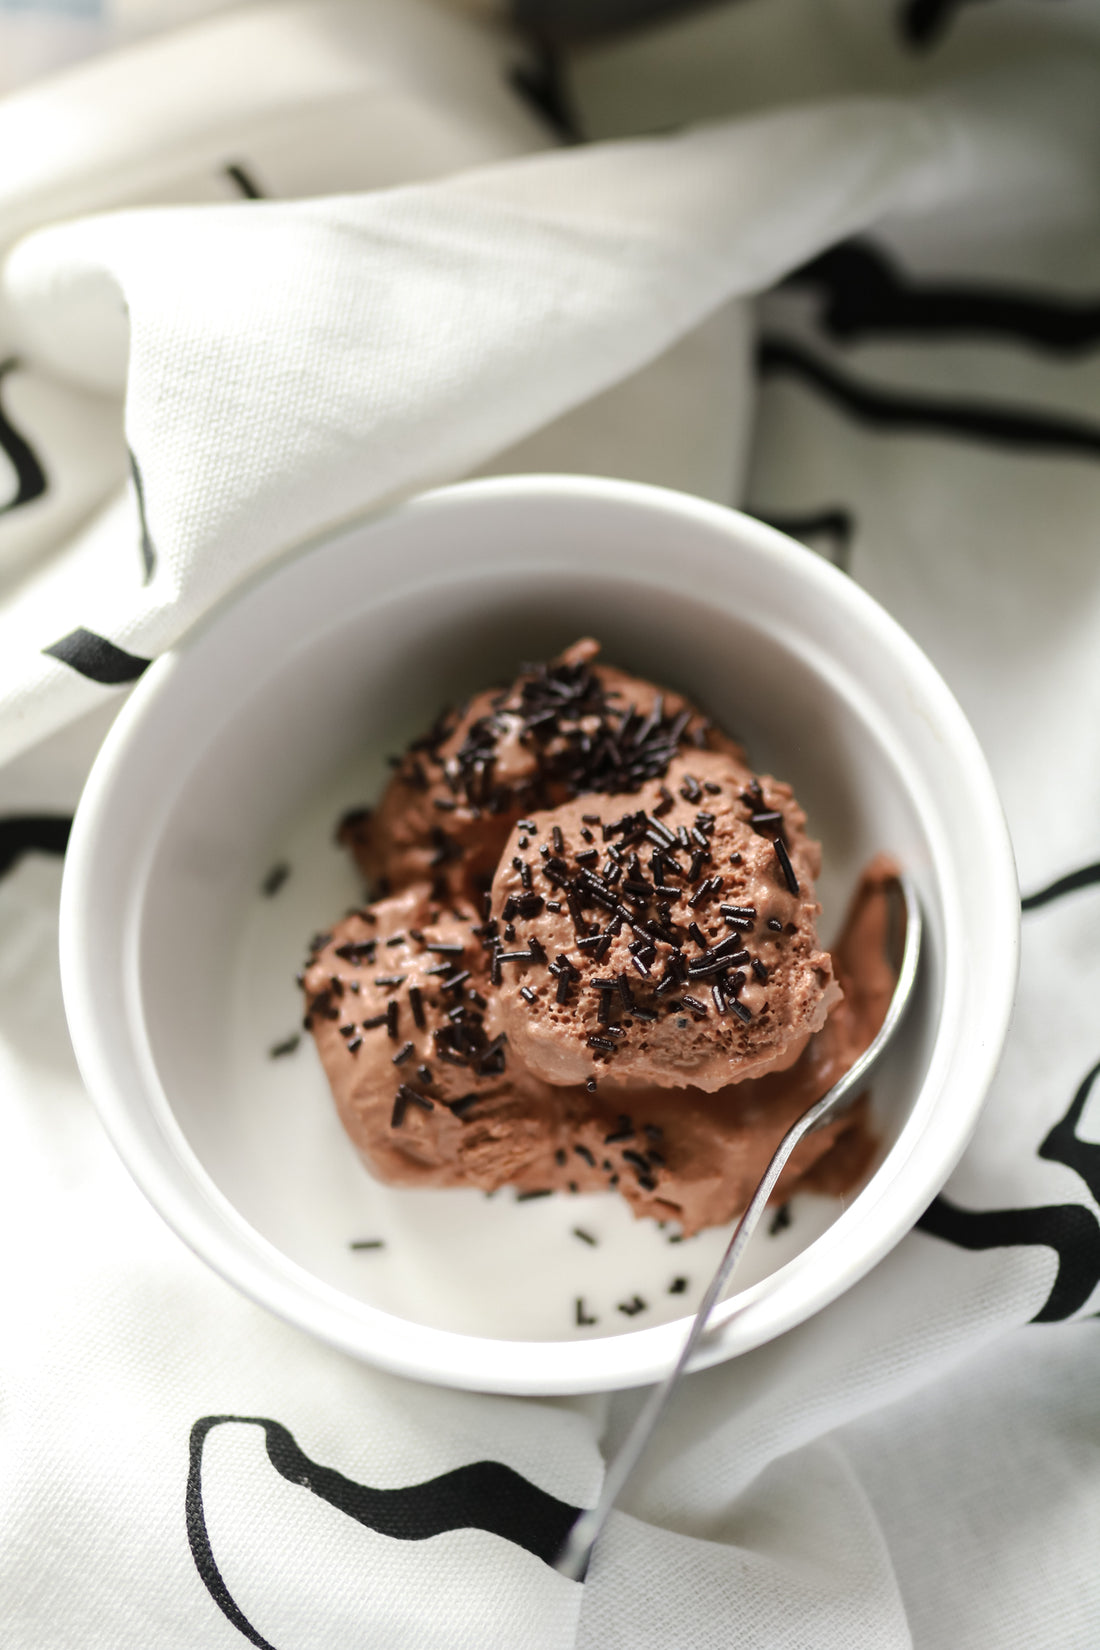 RECEPTE // Mājās gatavots saldējums - šokolādes